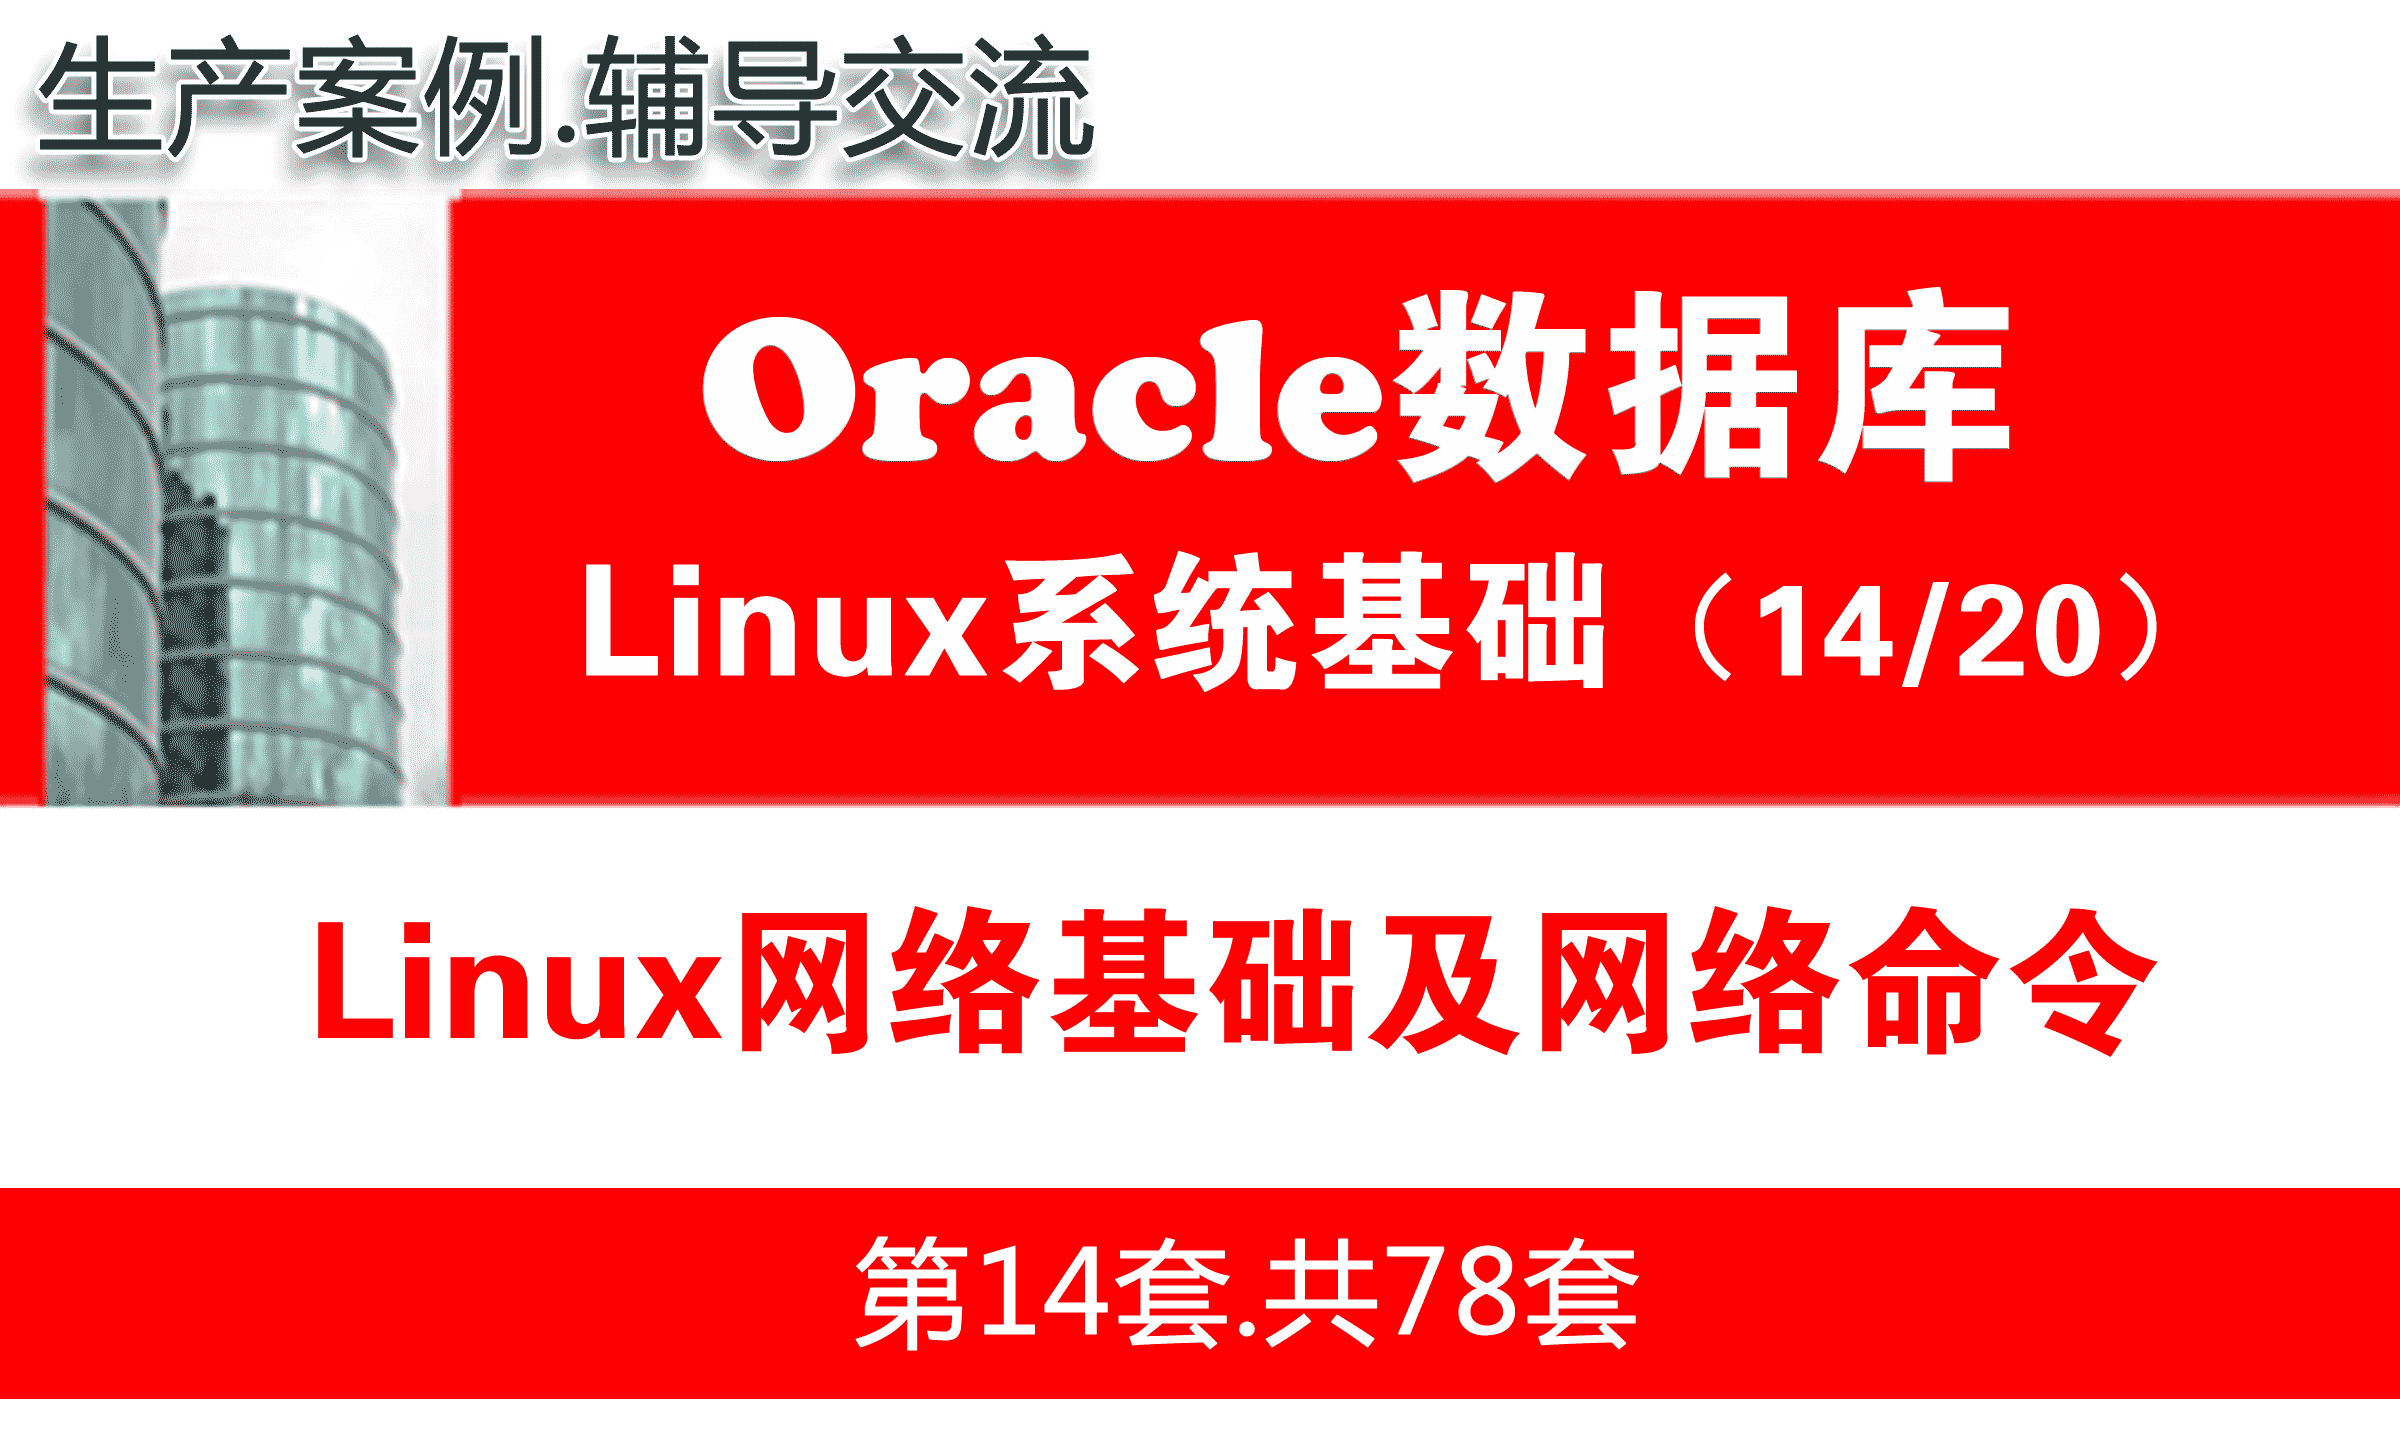 Linux网络基础及网络命令_Oracle数据库入门培训视频课程14